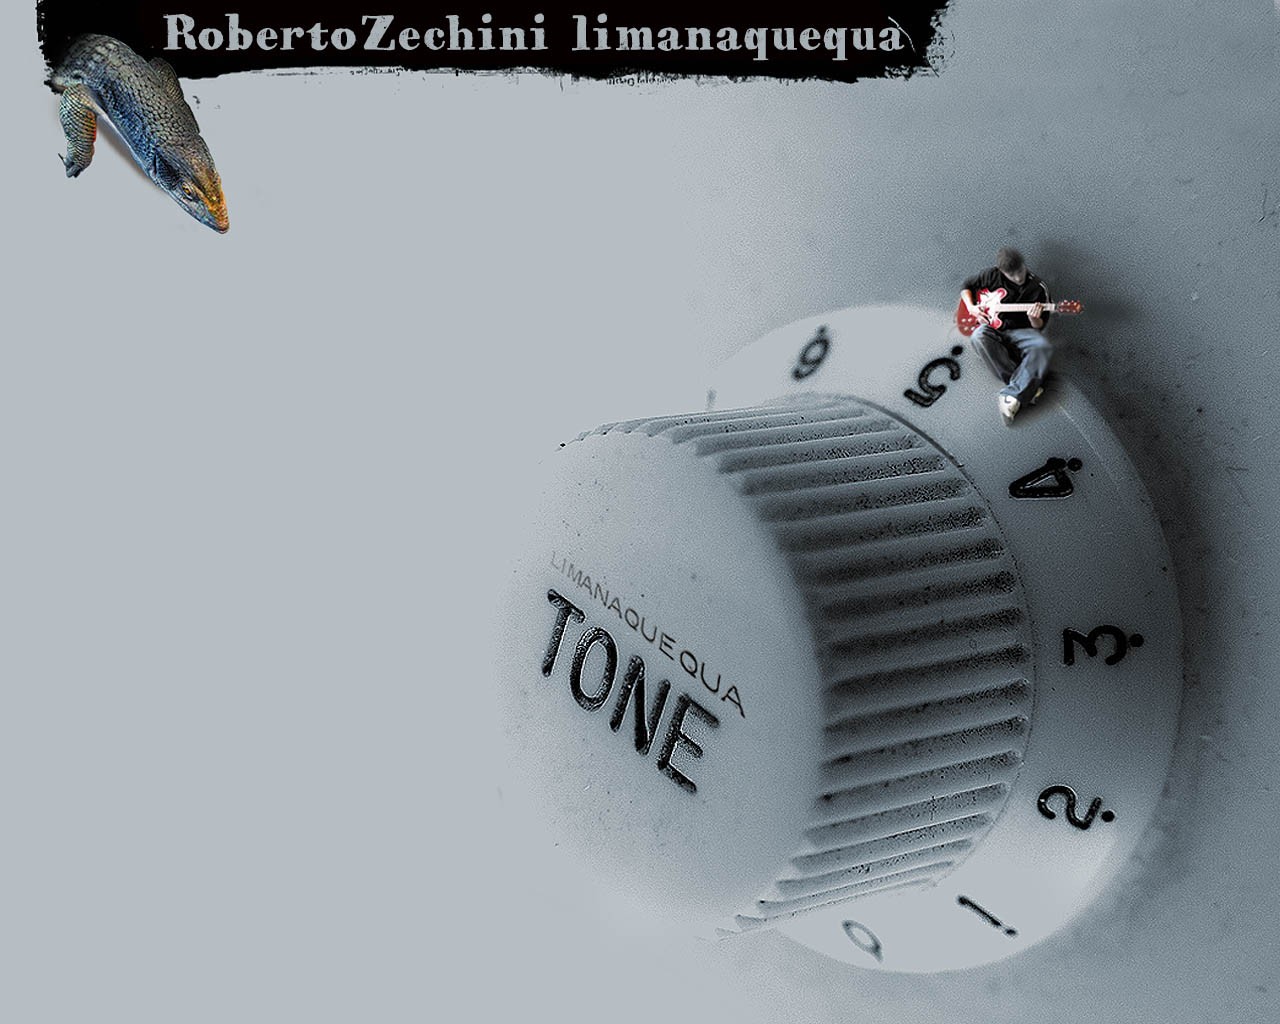 Roberto Zechini - limanaquequa #3 2020